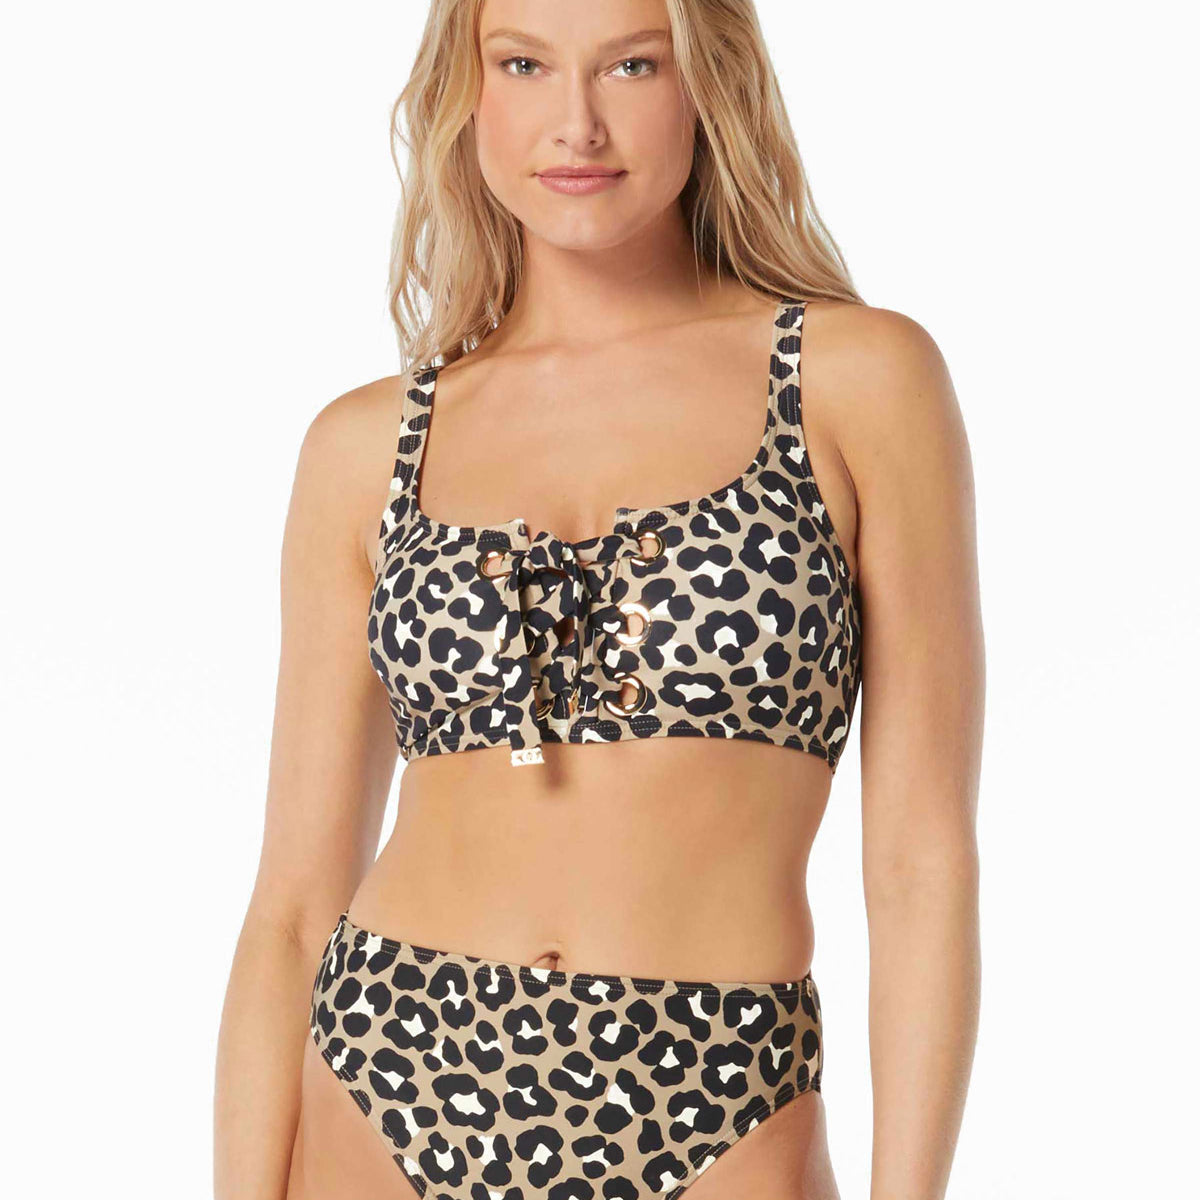 Michael Michale Kors: Graphic Cheetah Lace Up Bralette Top